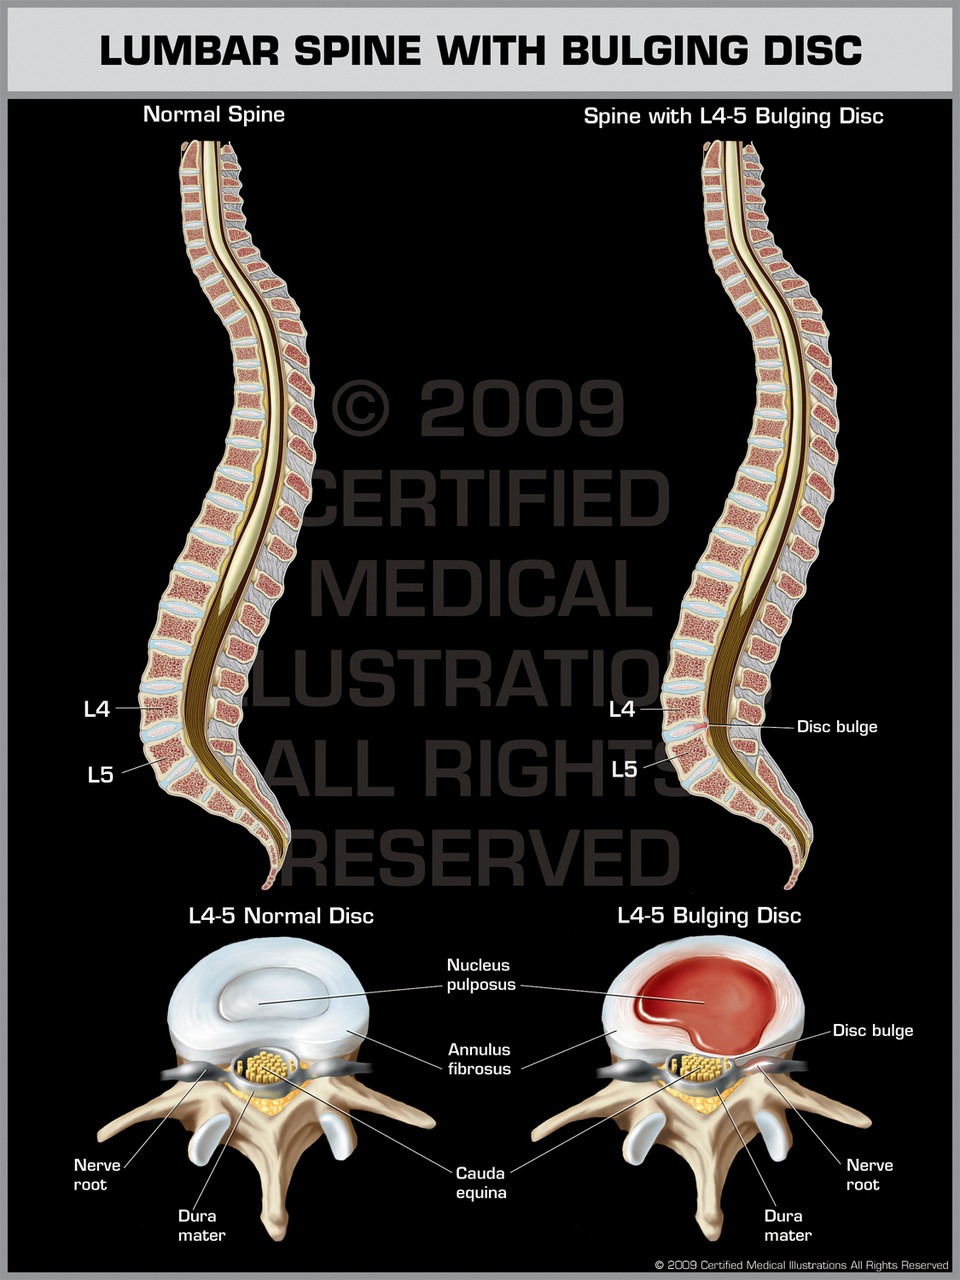 Lumbar Spine with Bulging Disc